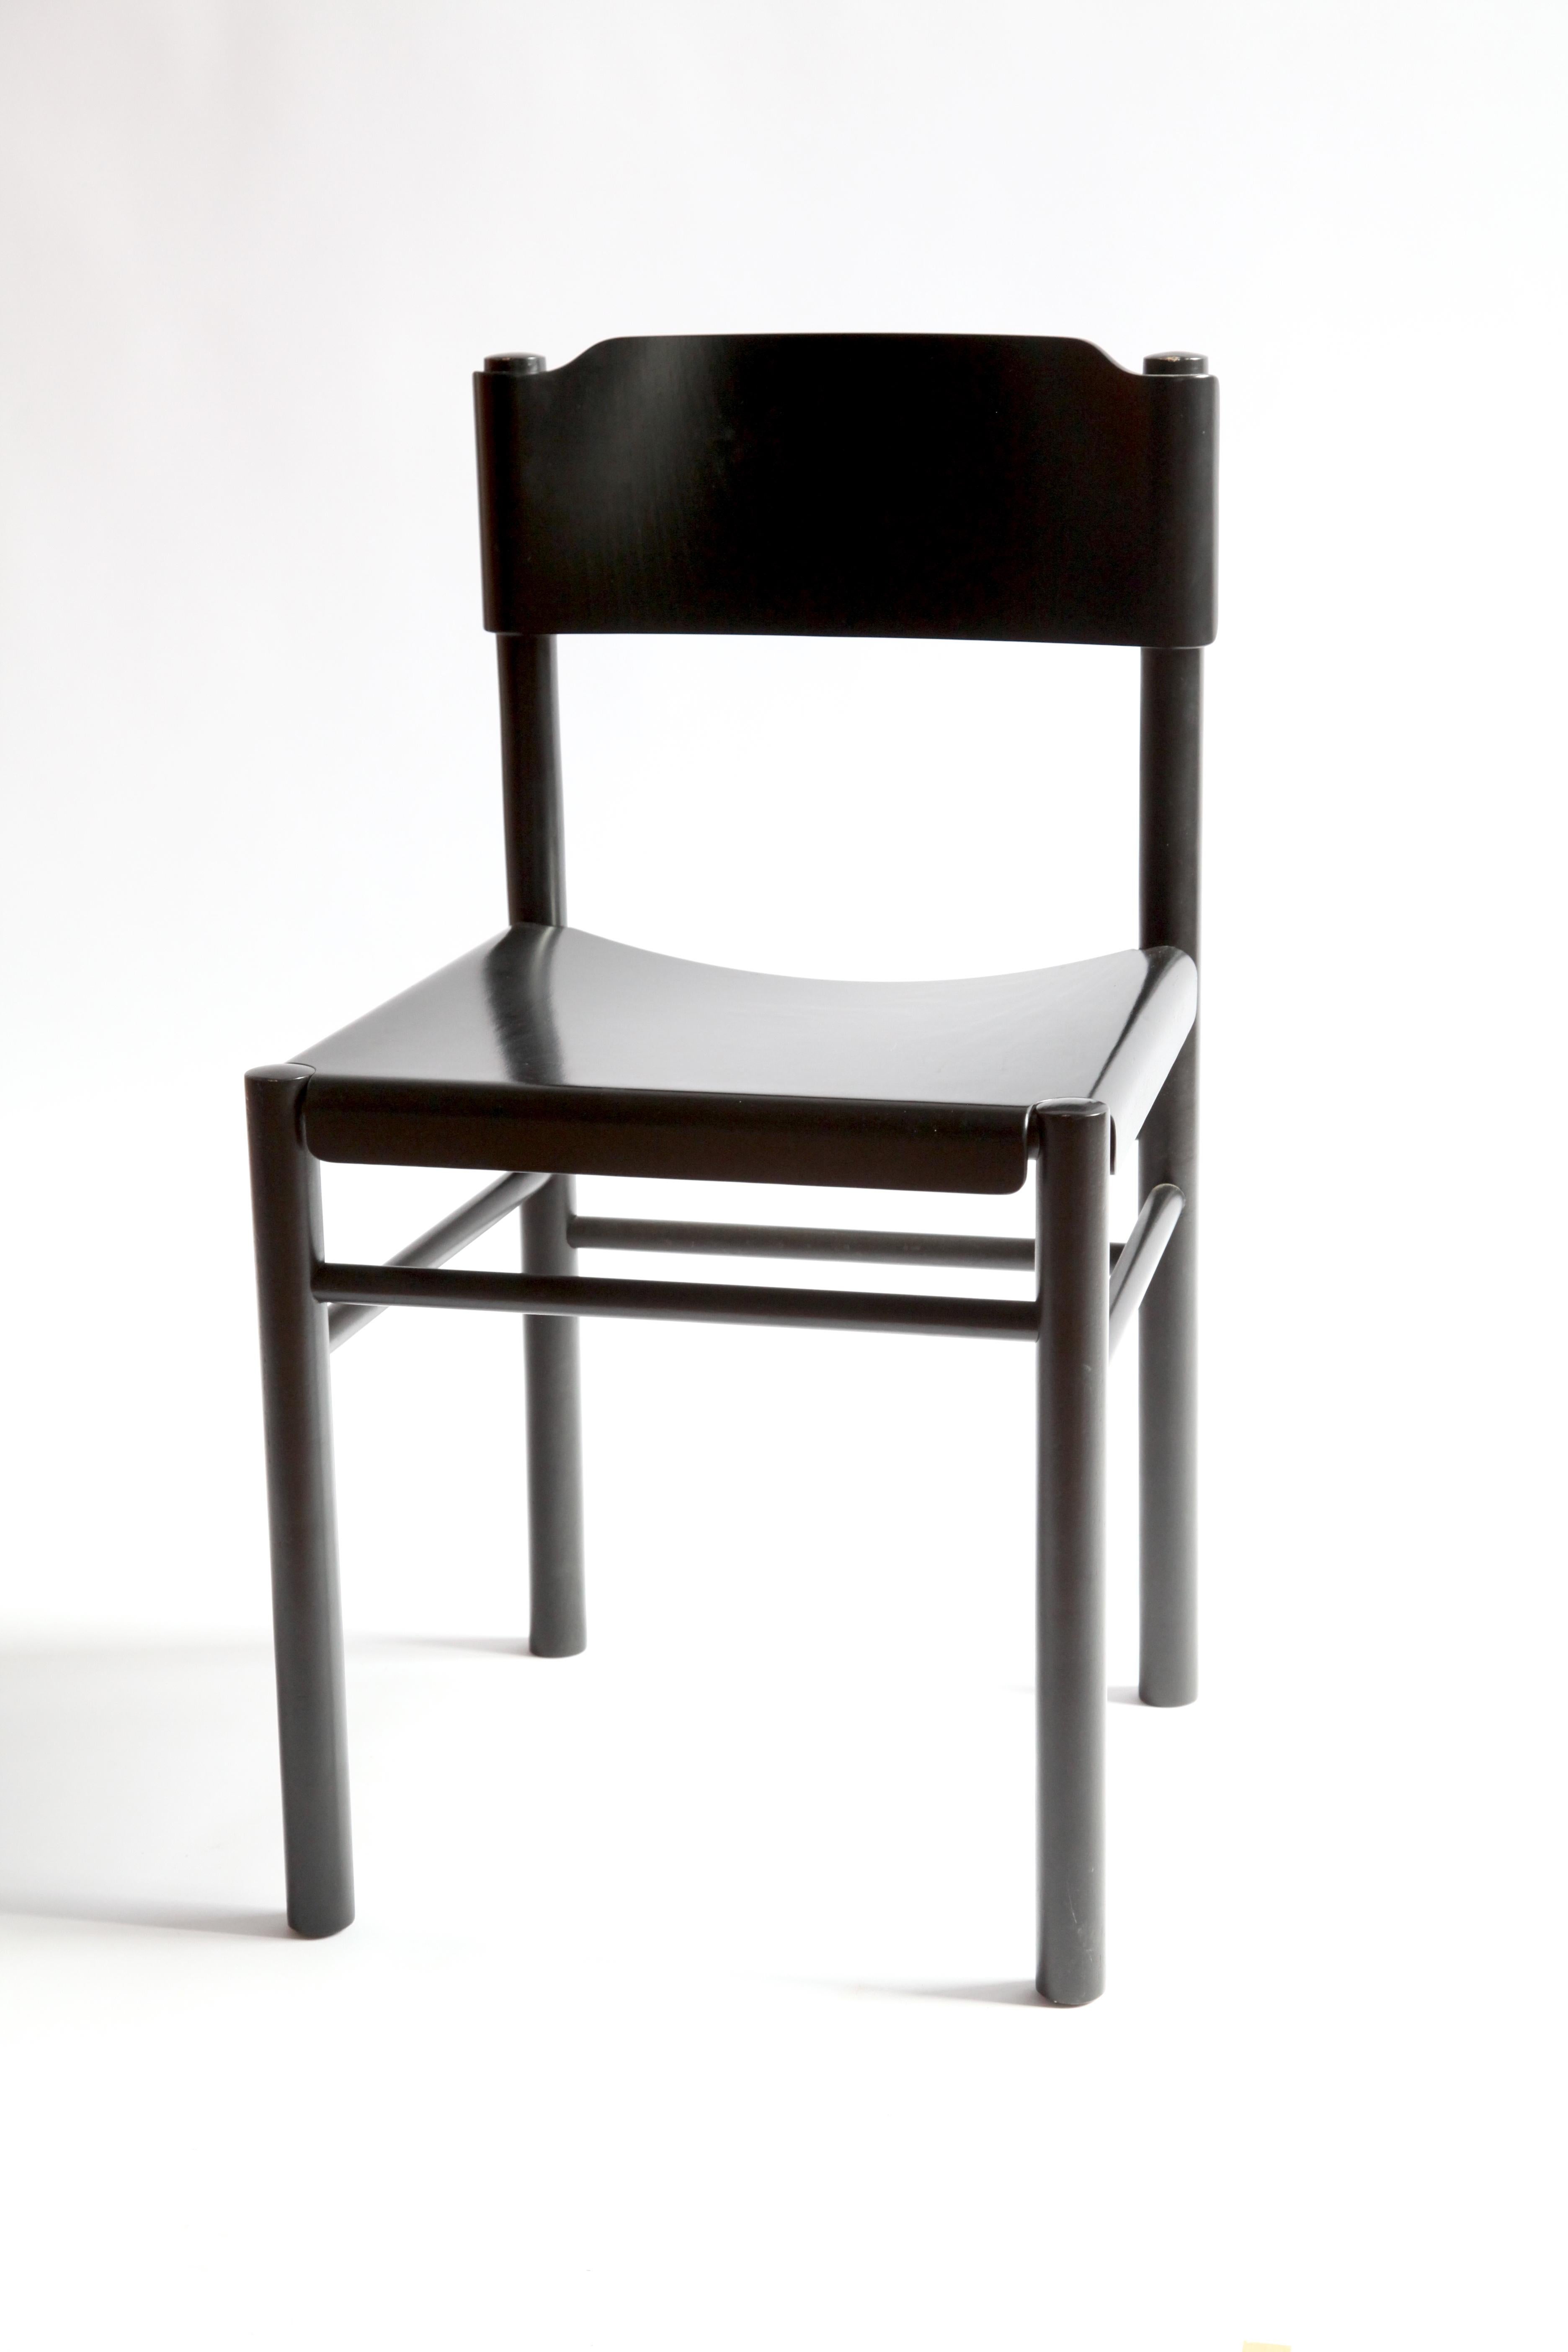 À l'origine, Hutten a conçu la chaise Zuiderzee à la demande du Zuiderzee Museum Enkhuizen. Il s'est inspiré de la typologie de la chaise traditionnelle néerlandaise la plus répandue depuis des siècles, la 